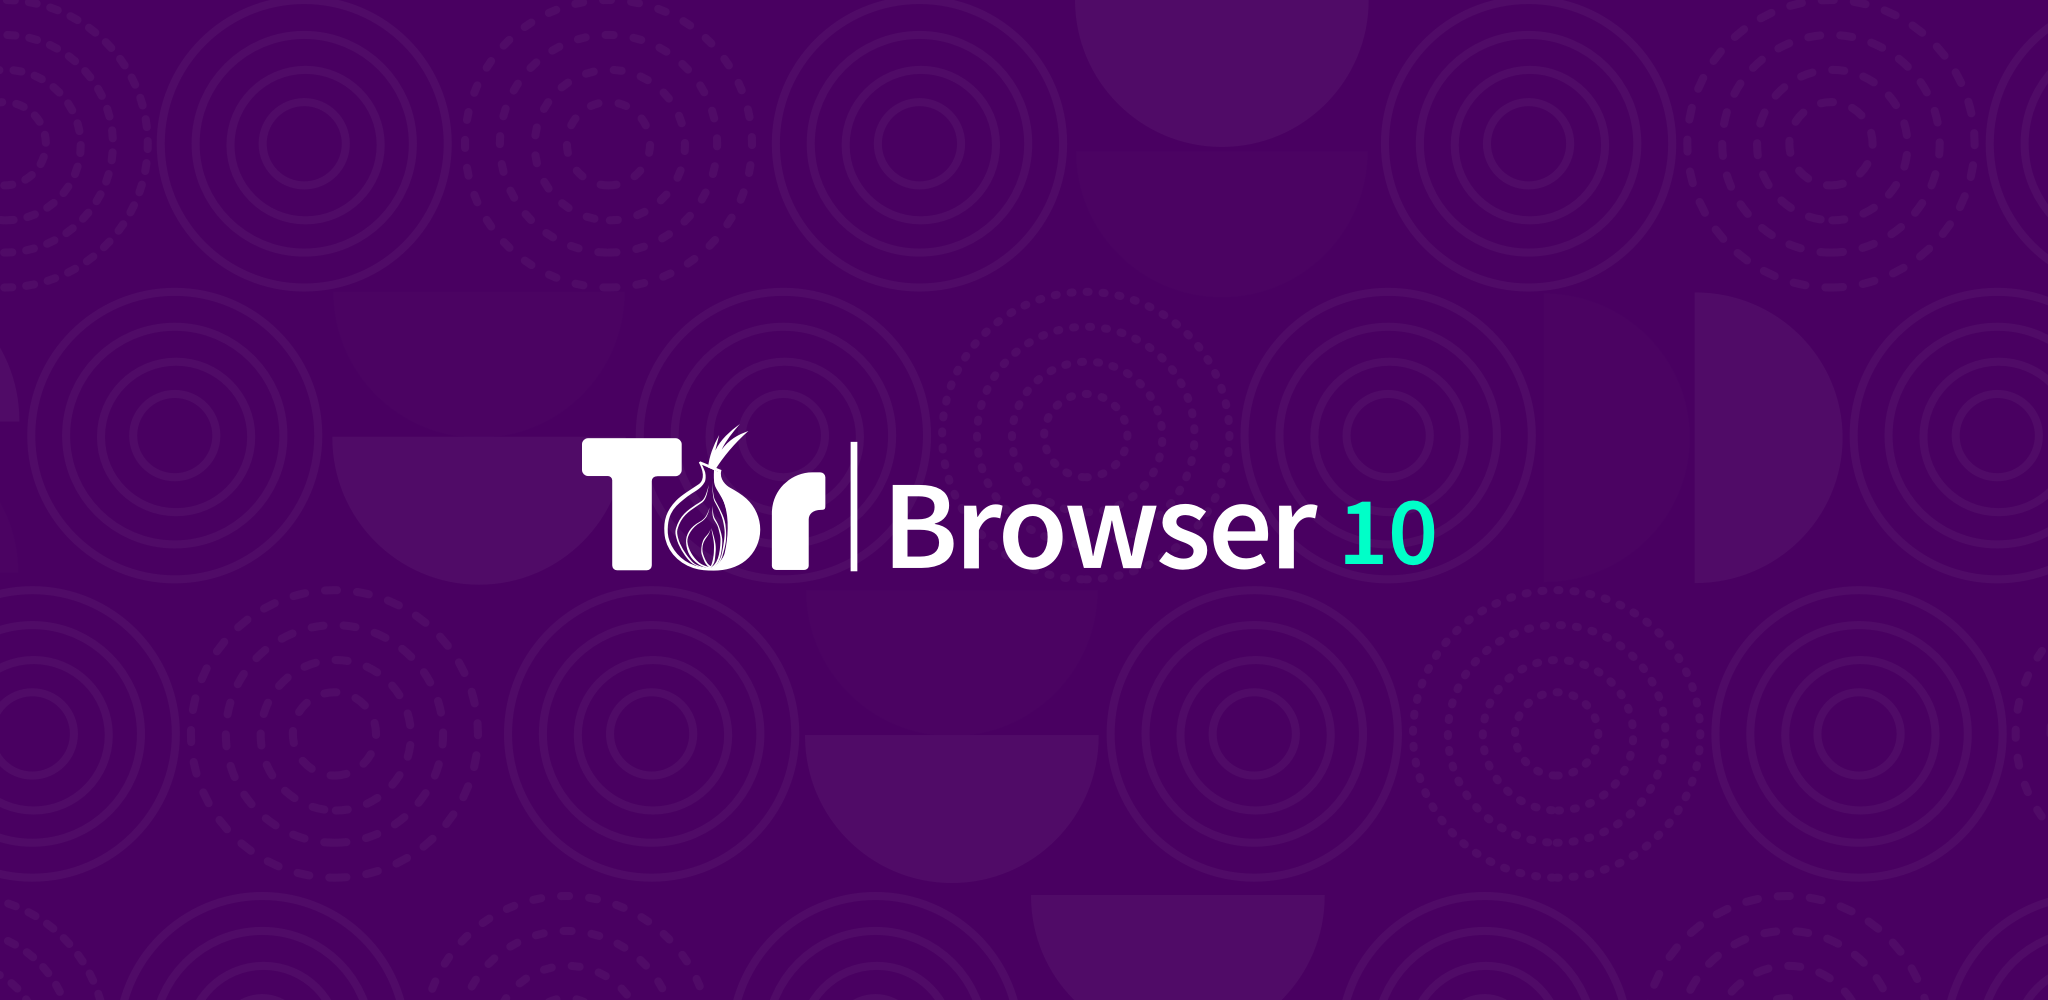 tor im browser bundle for windows mega